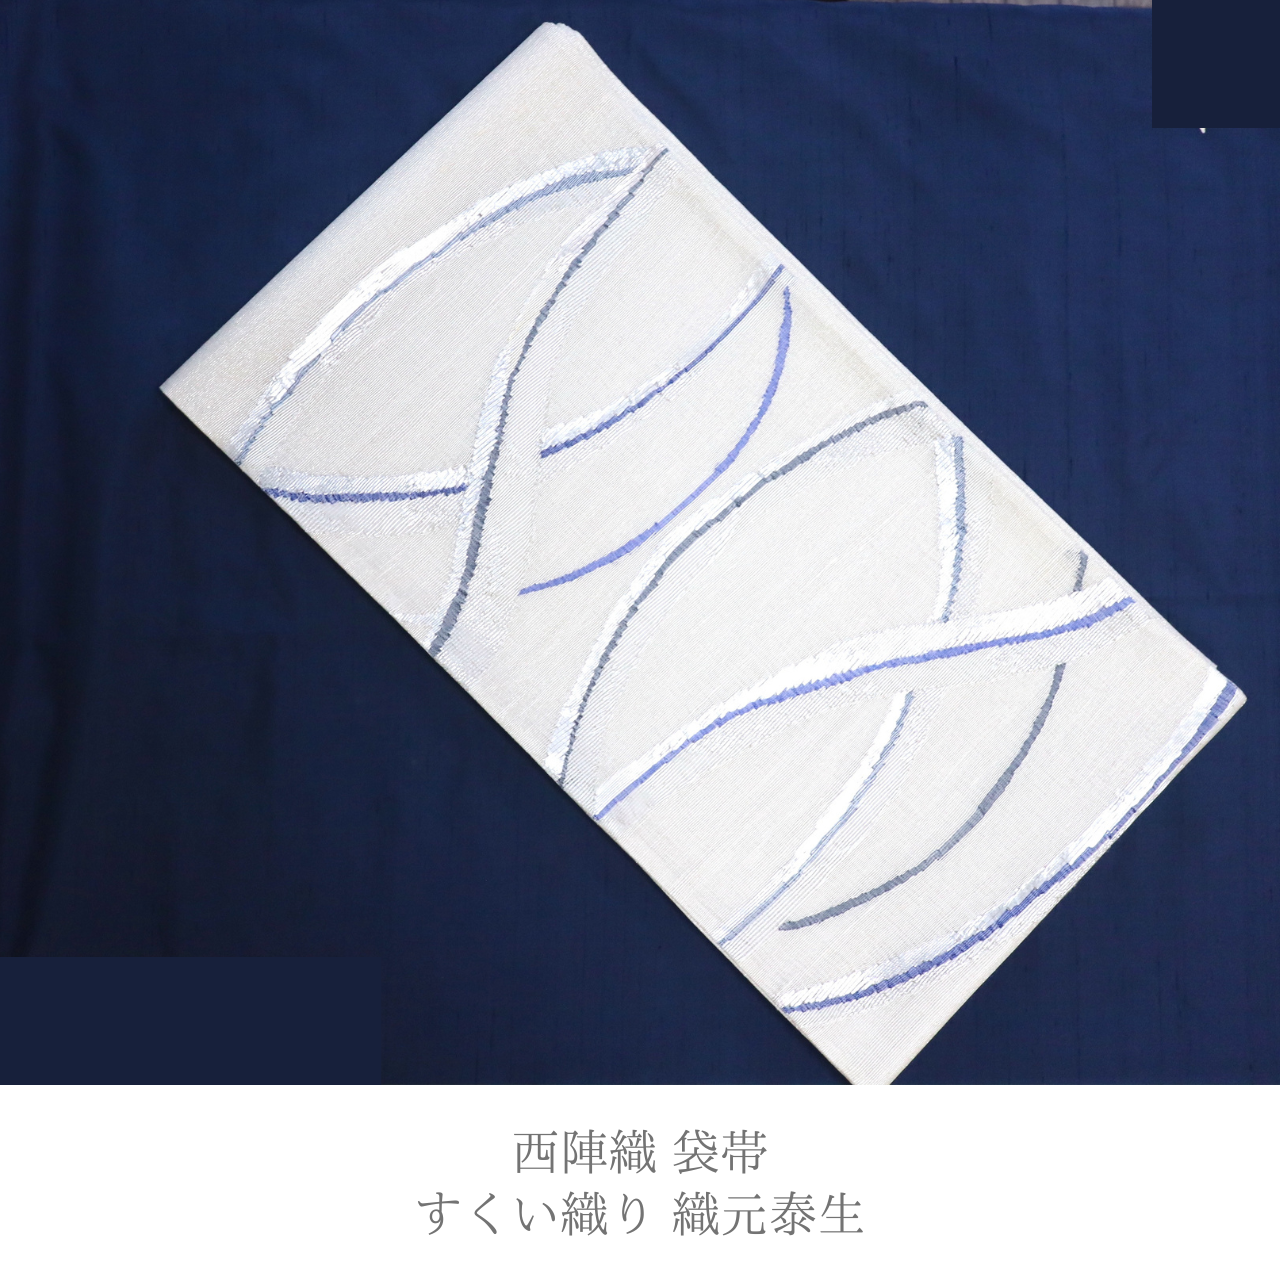 【期間限定 / 袋帯 / 西陣織 / 泰生織物謹製】すくい織りの技法で魅せるモダンな袋帯